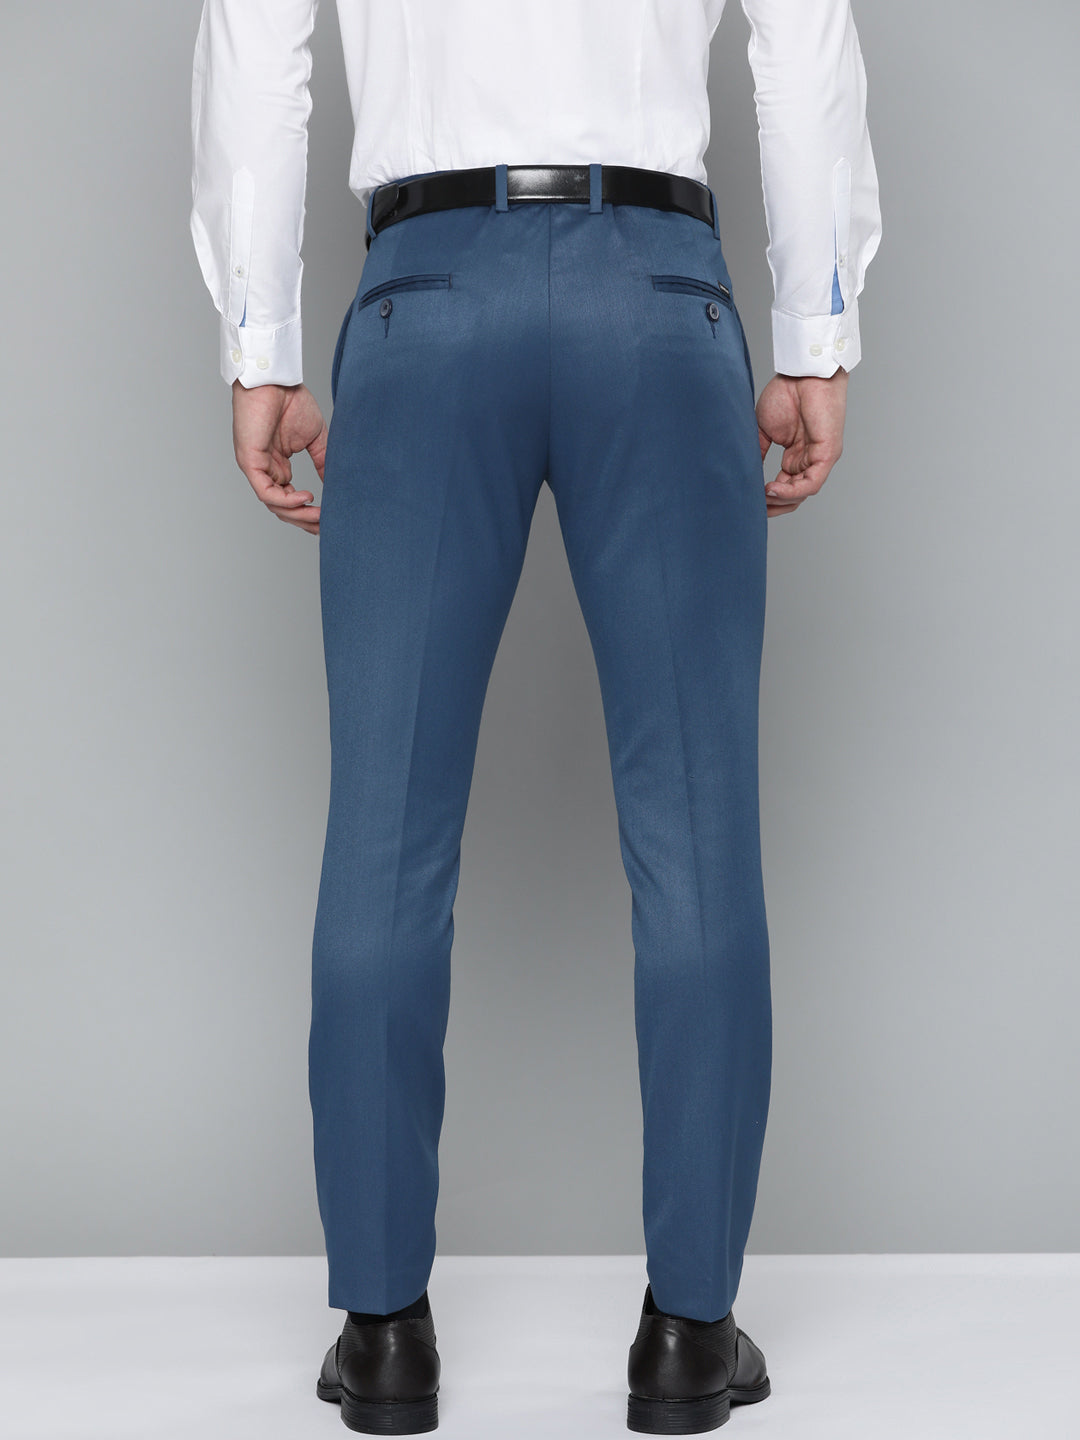 Navy Dress Trousers | SPIER & MACKAY